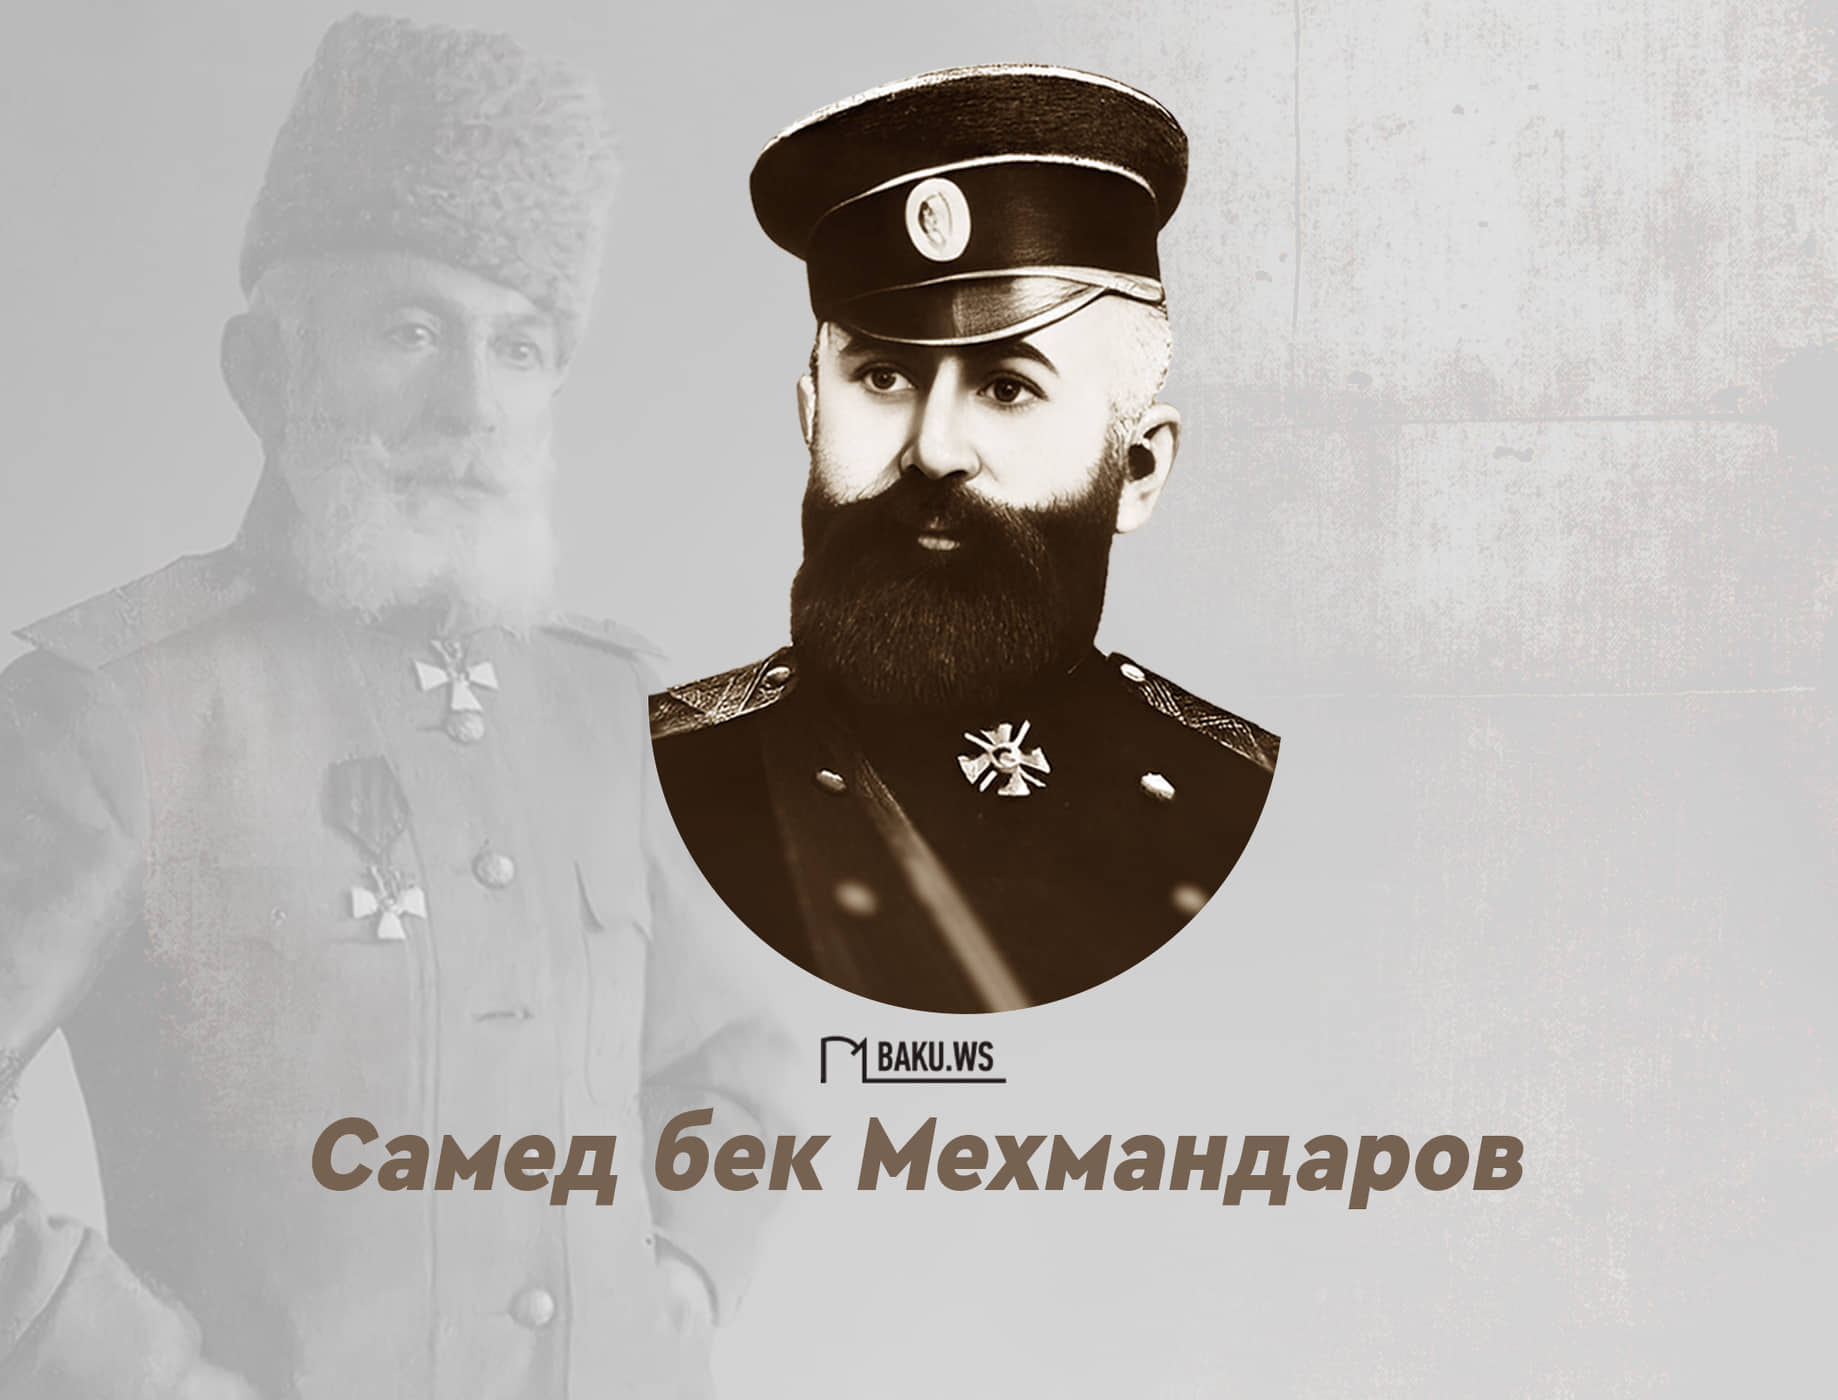 Сегодня день рождения легендарного генерала Самед бека Мехмандарова